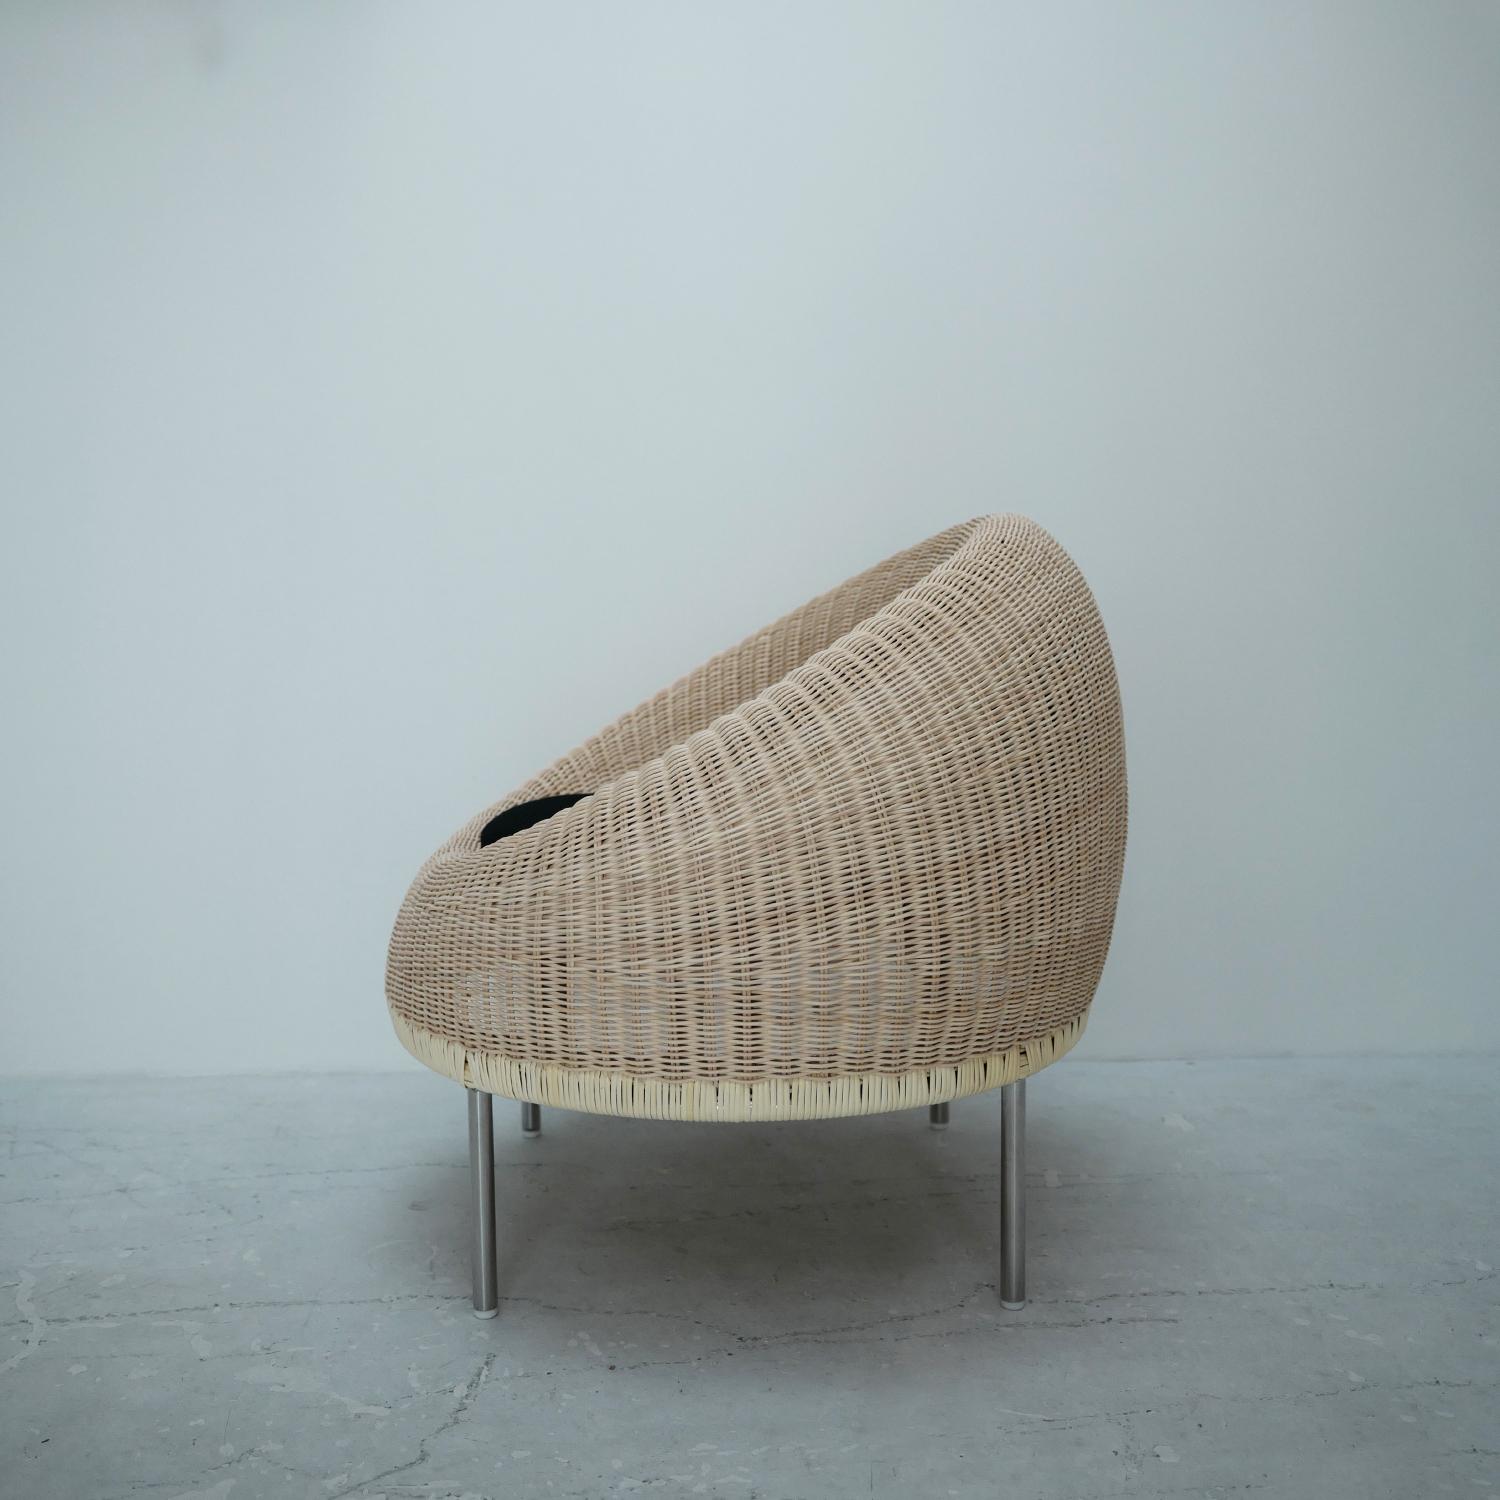 Cette chaise longue a été présentée par le laboratoire de design d'Isamu Kenmochi en 1960. Il a été conçu pour être installé au Otone Country Club au Japon. Il s'agit d'une pièce rare parmi les séries en rotin signées Isamu Kenmochi, dans laquelle